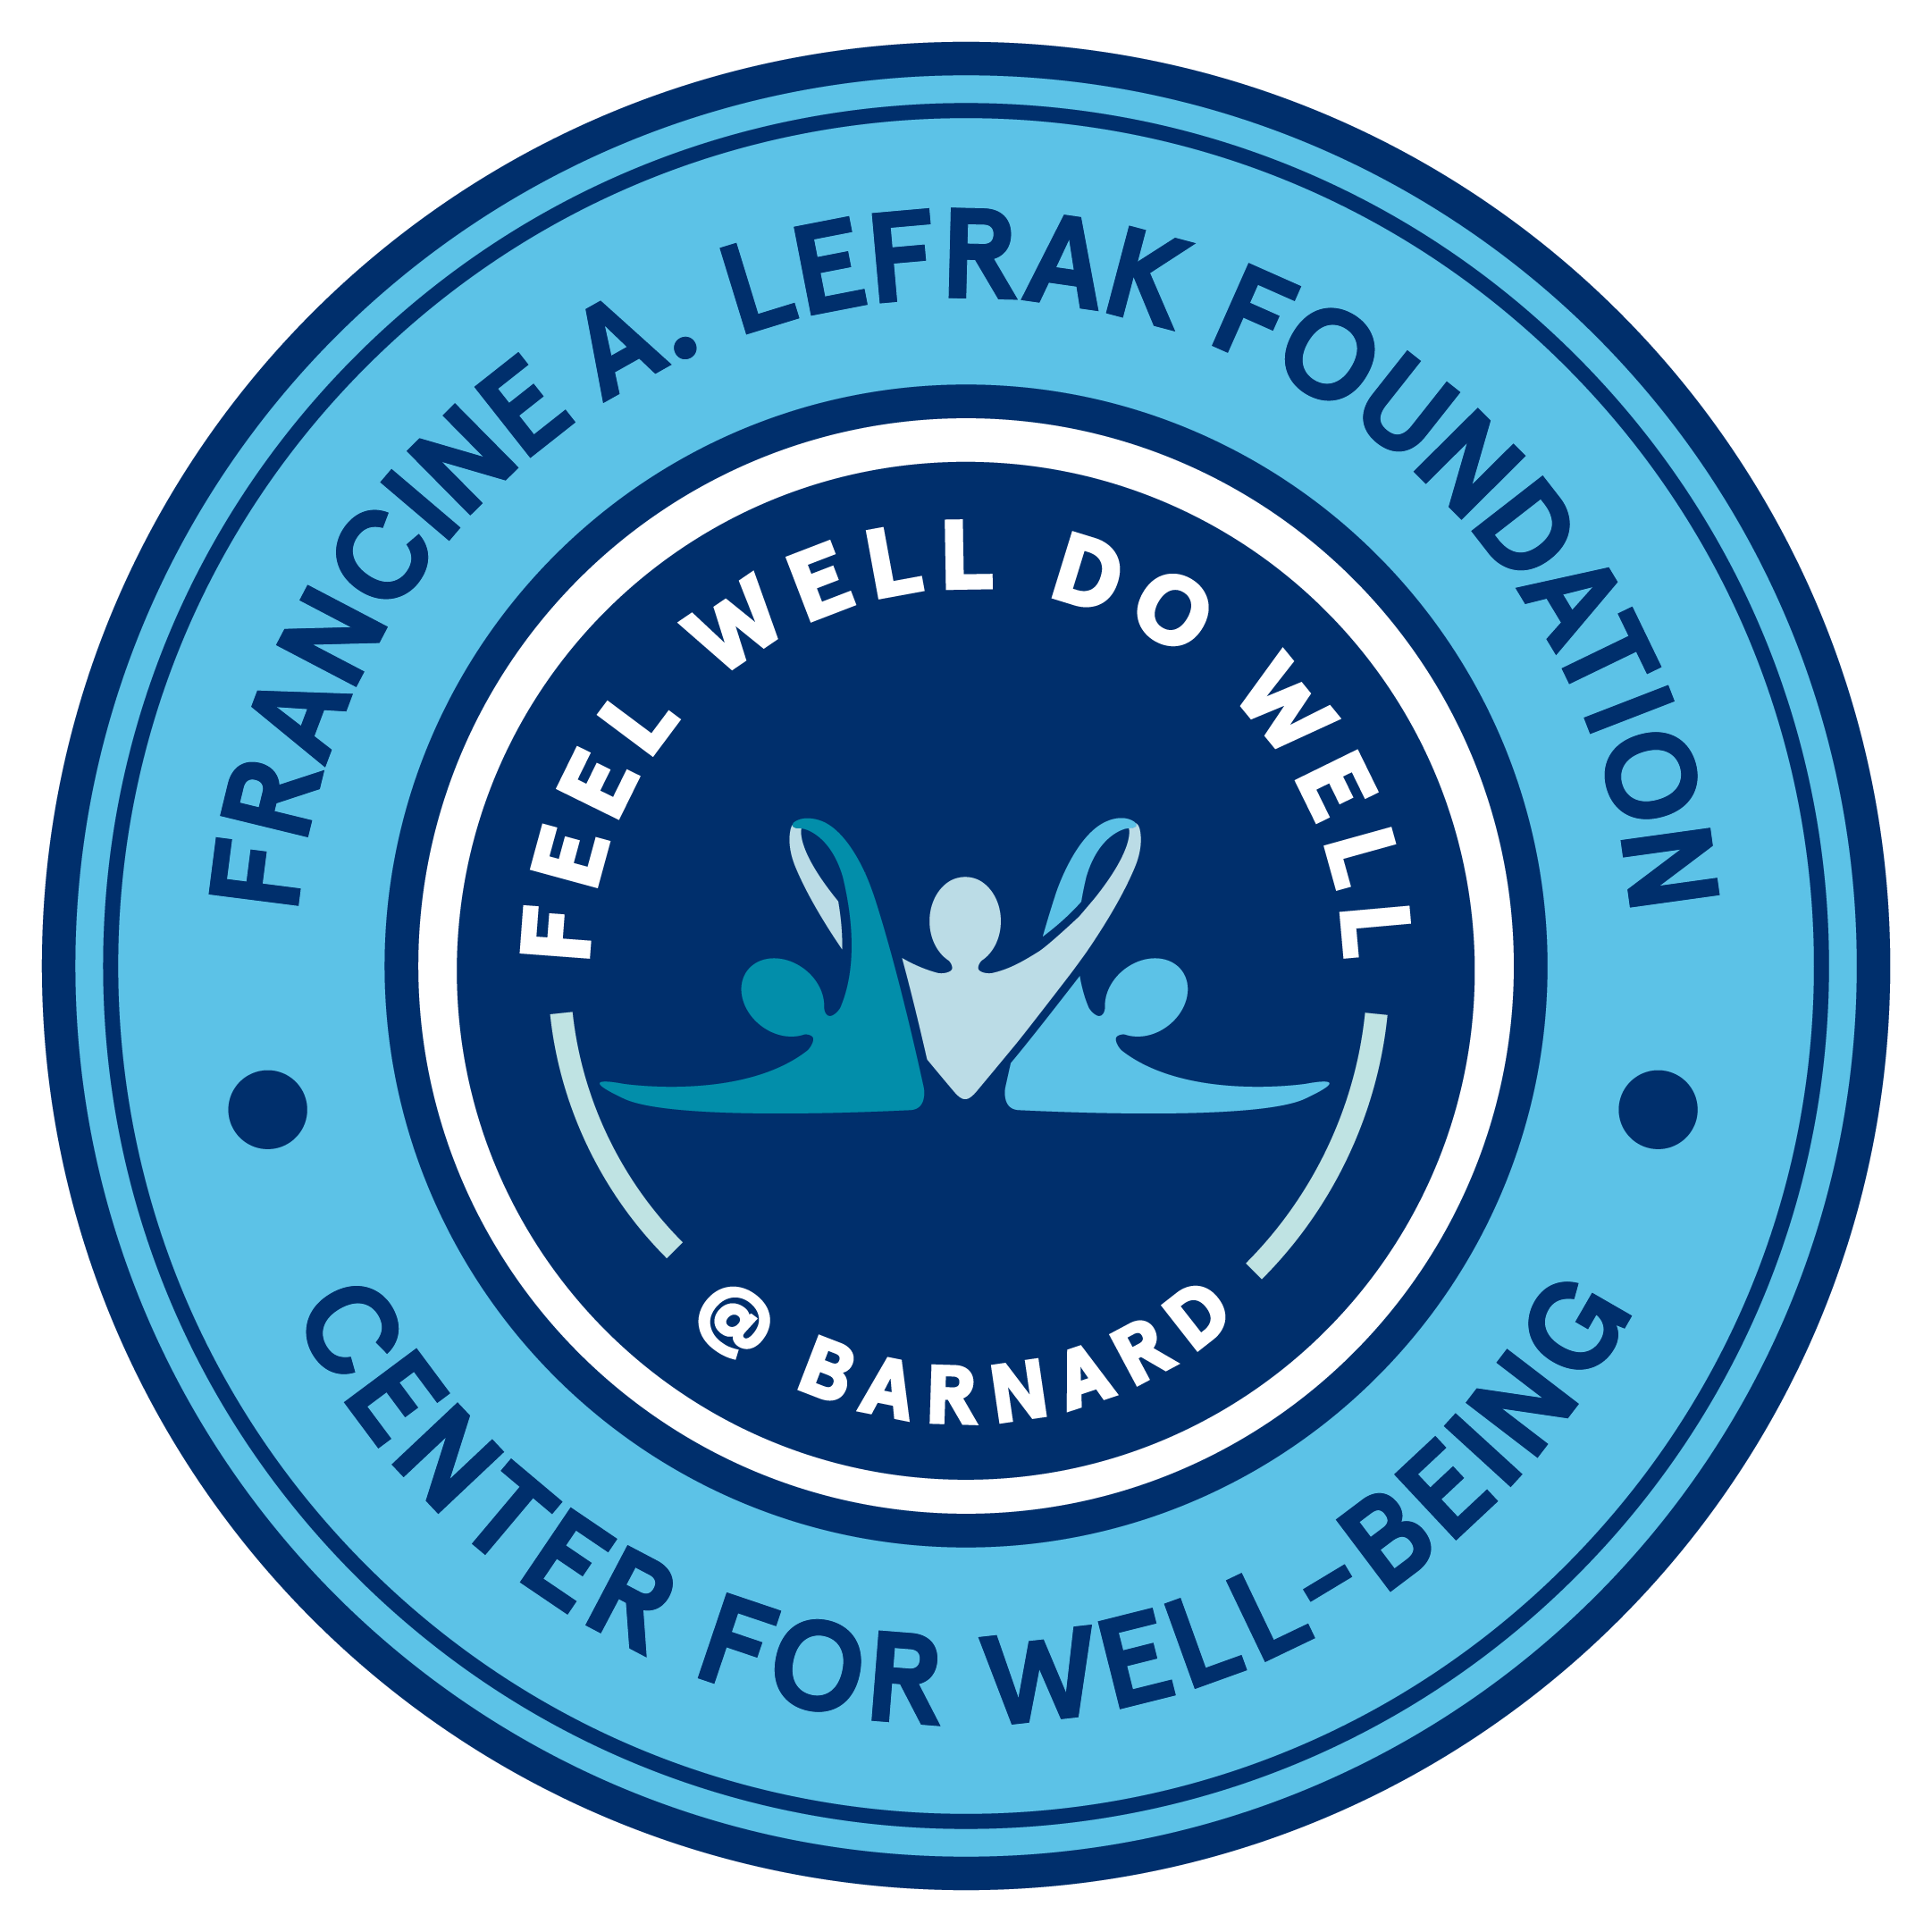 Francine Lefrak Foundation Center for Well-being